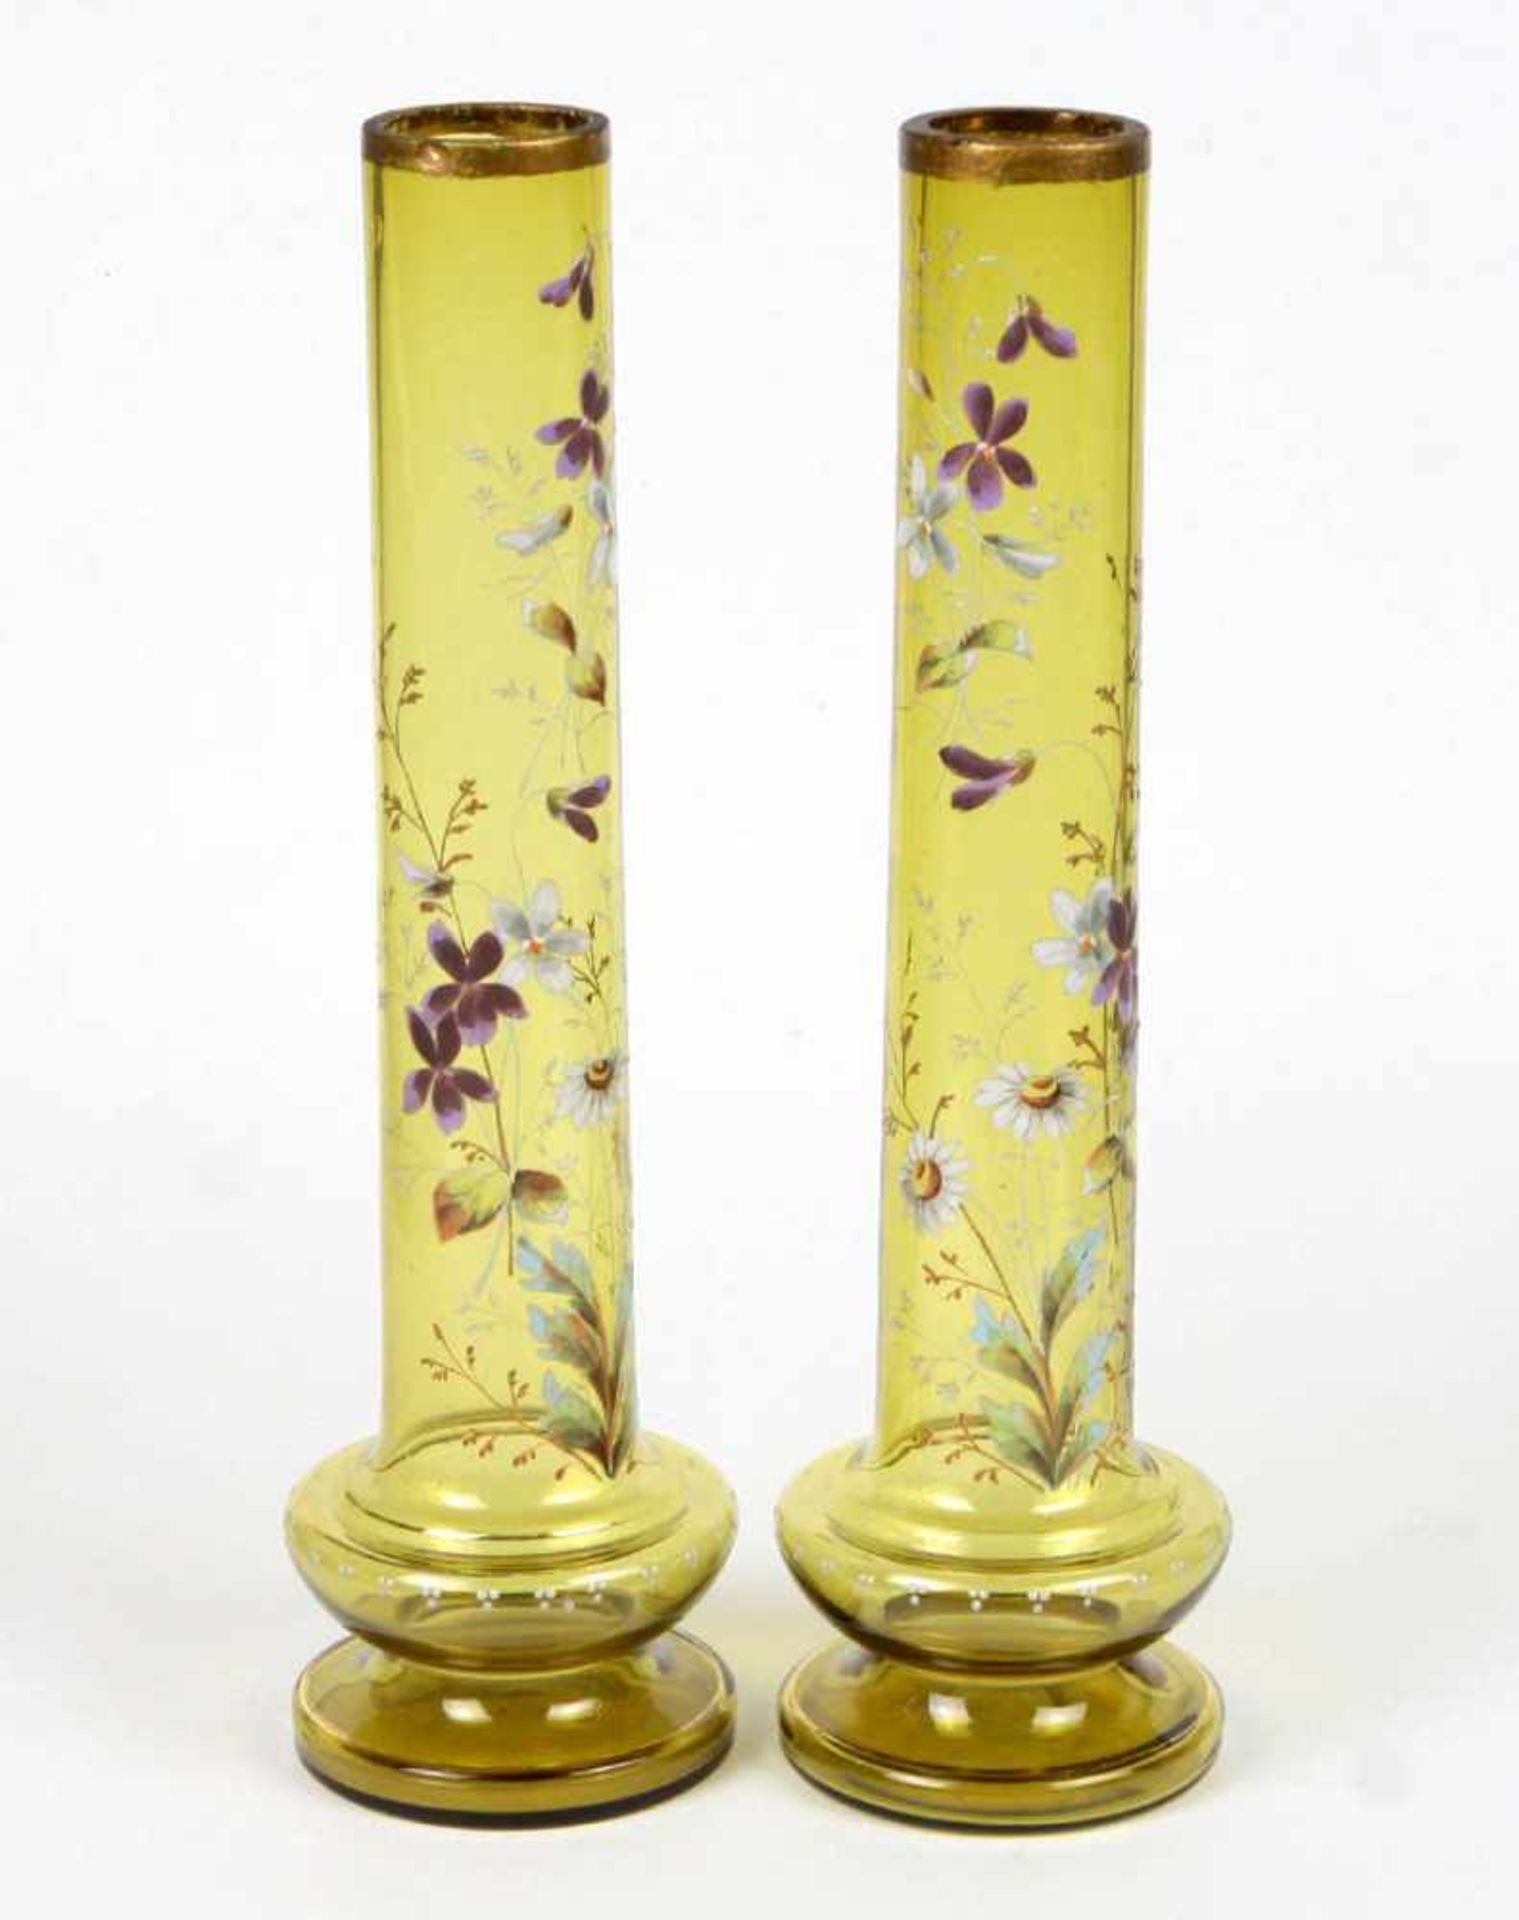 Historismus Vasenpaar um 1880grünbraunes Glas mundgeblasen, leicht gekugelter Boden, geschnittener